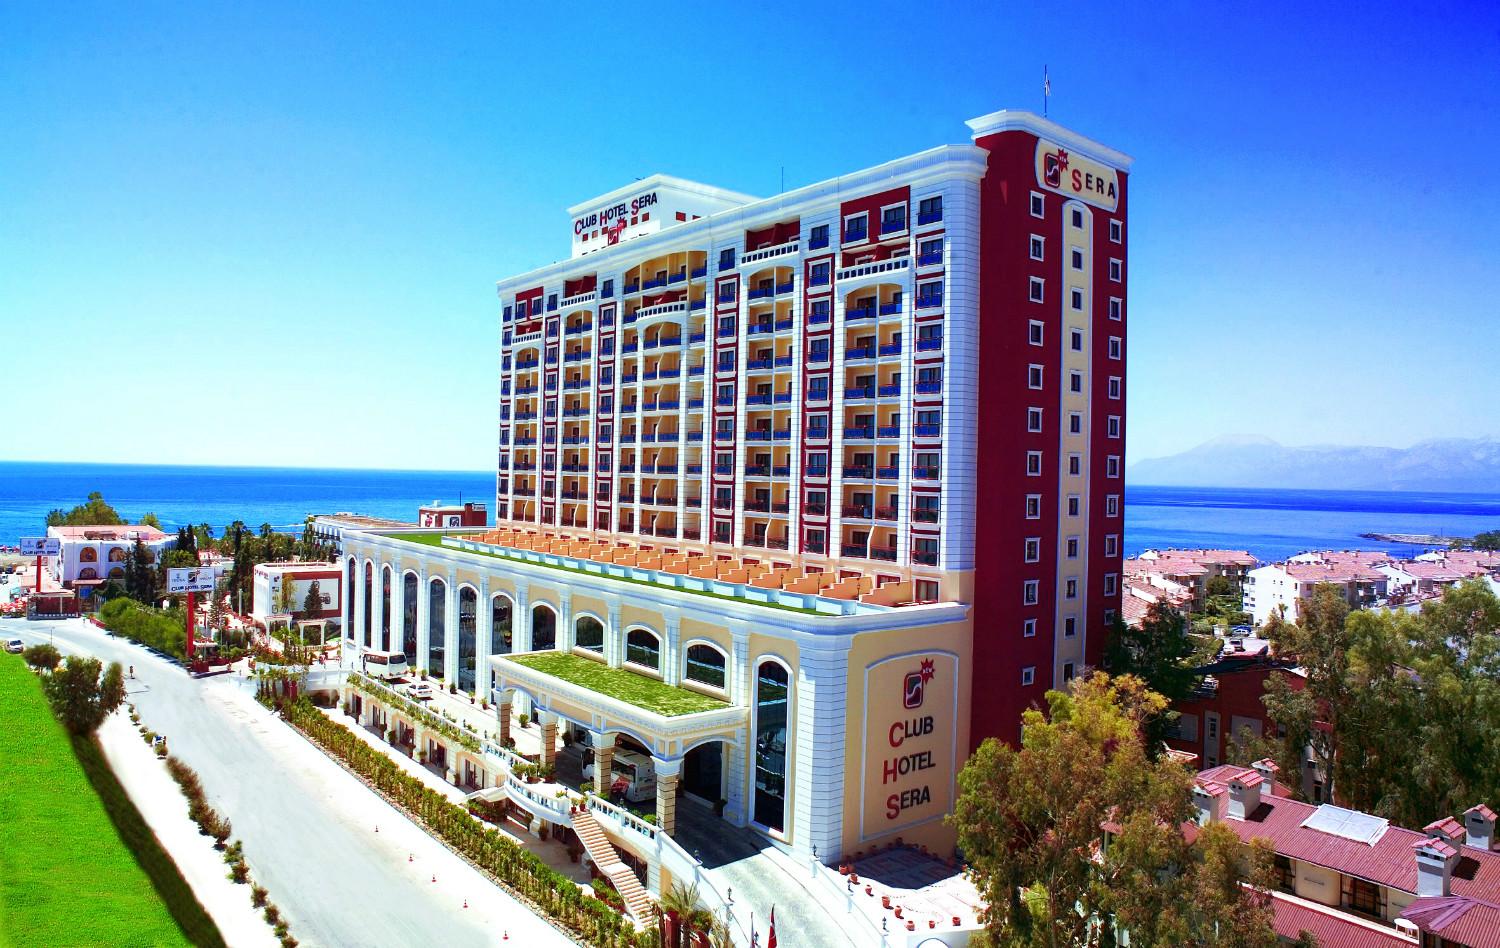 Club Hotel Sera, resortul asemeni unui palat otoman